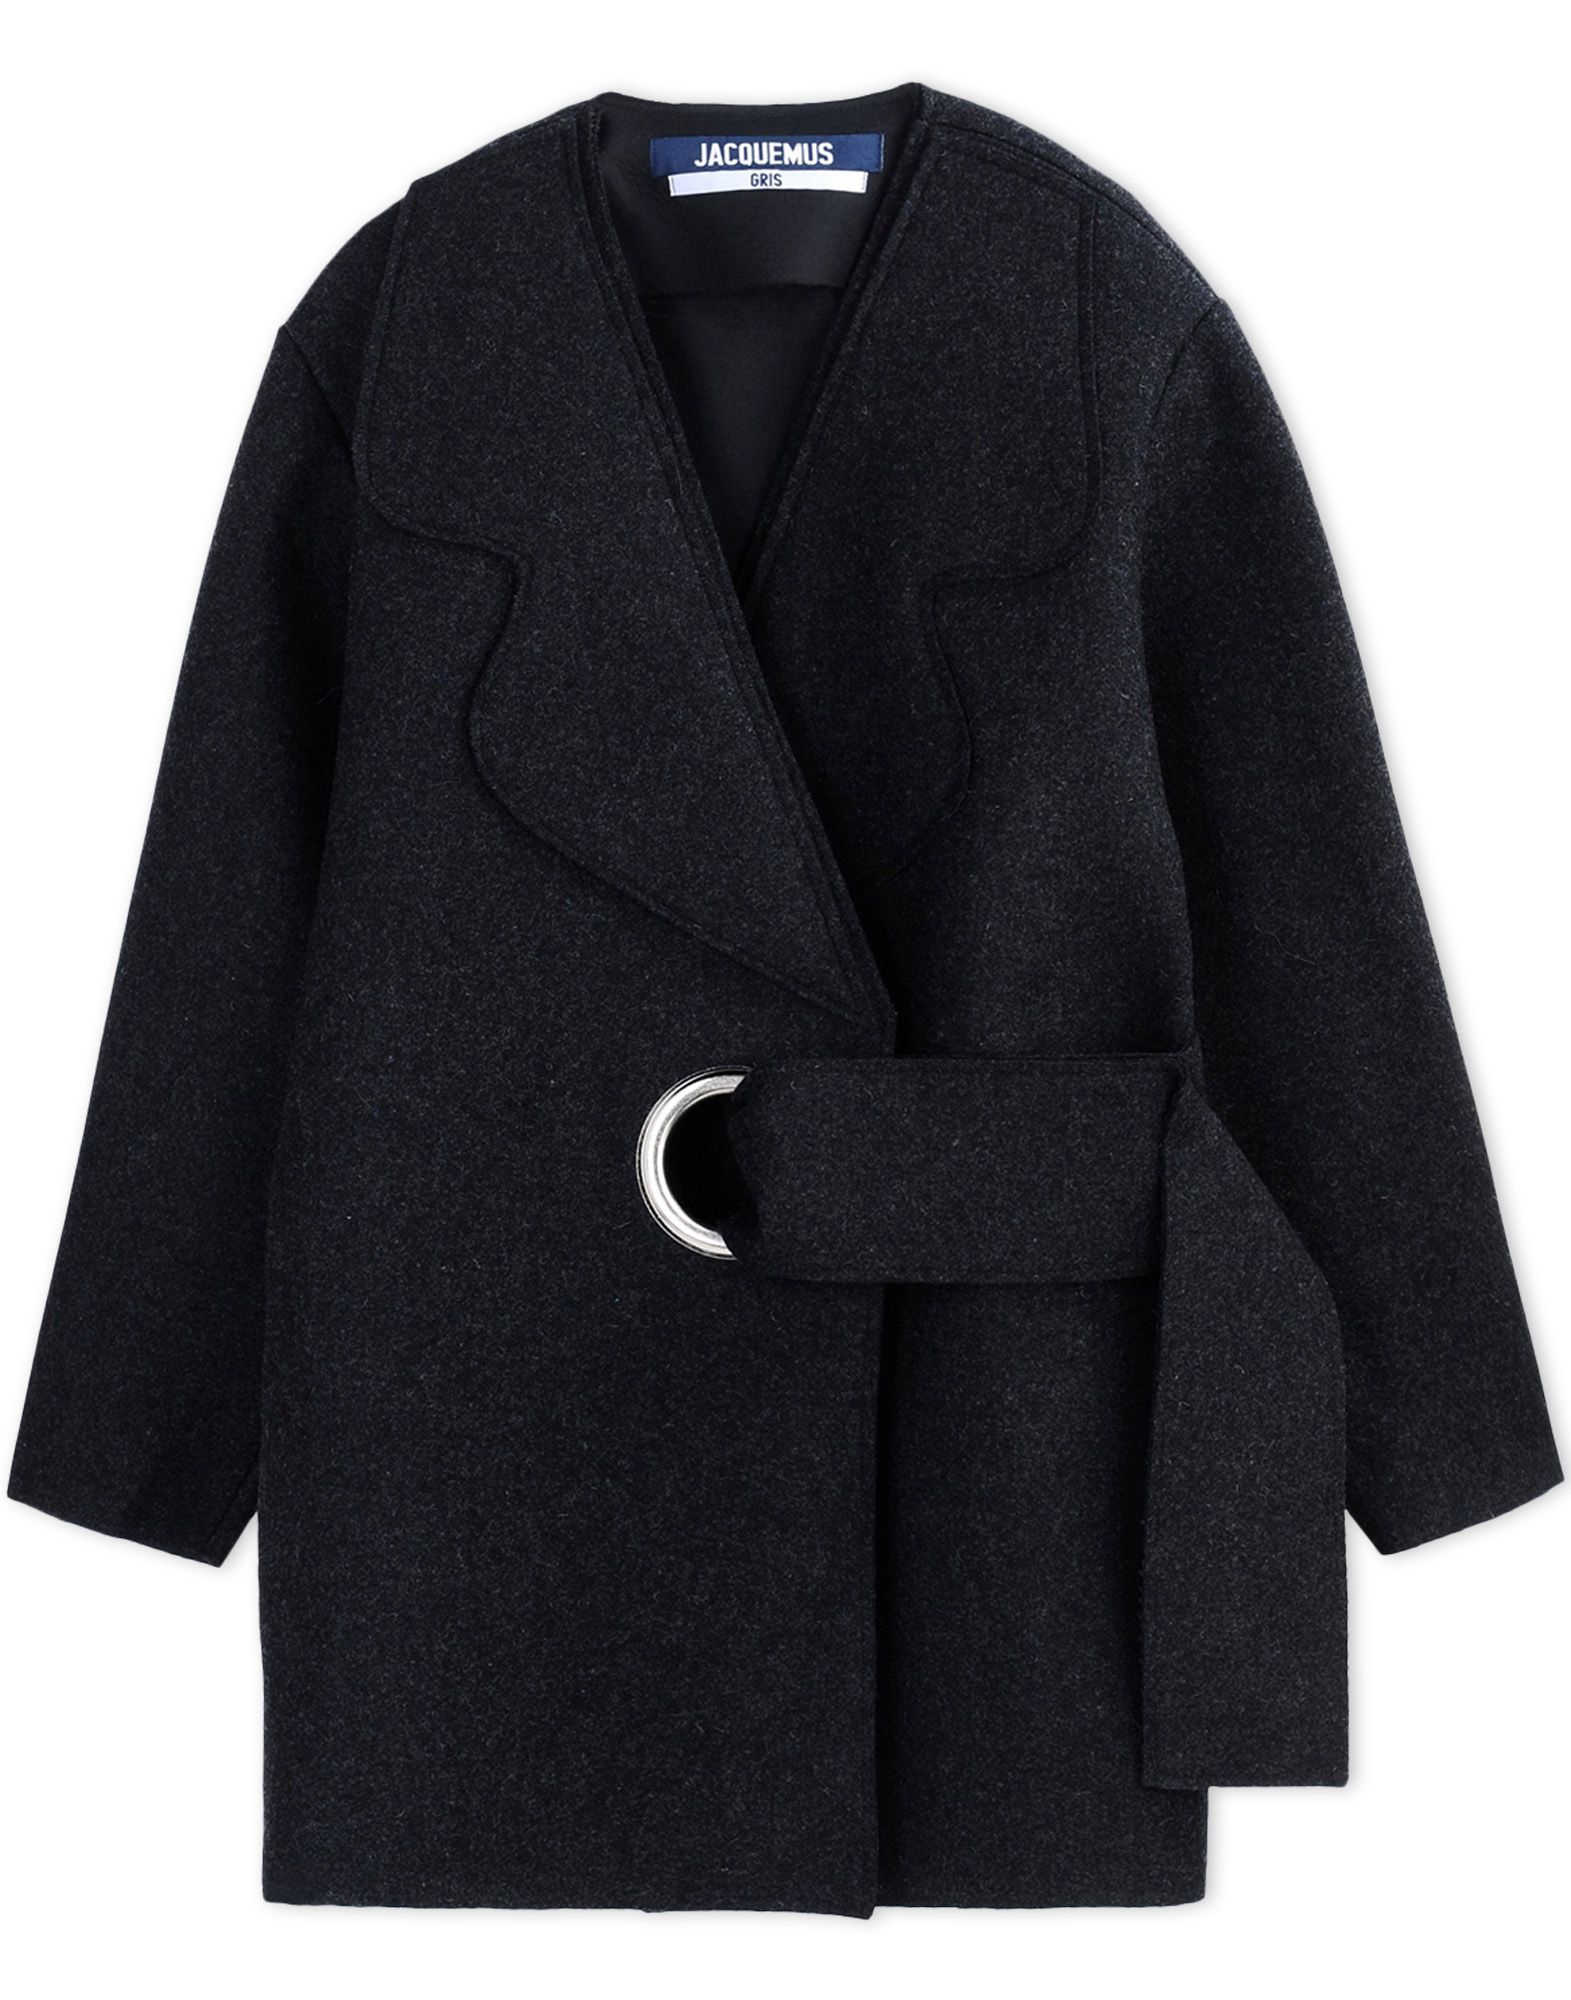 Jacquemus Coat in Steel Grey (Gray) - Lyst